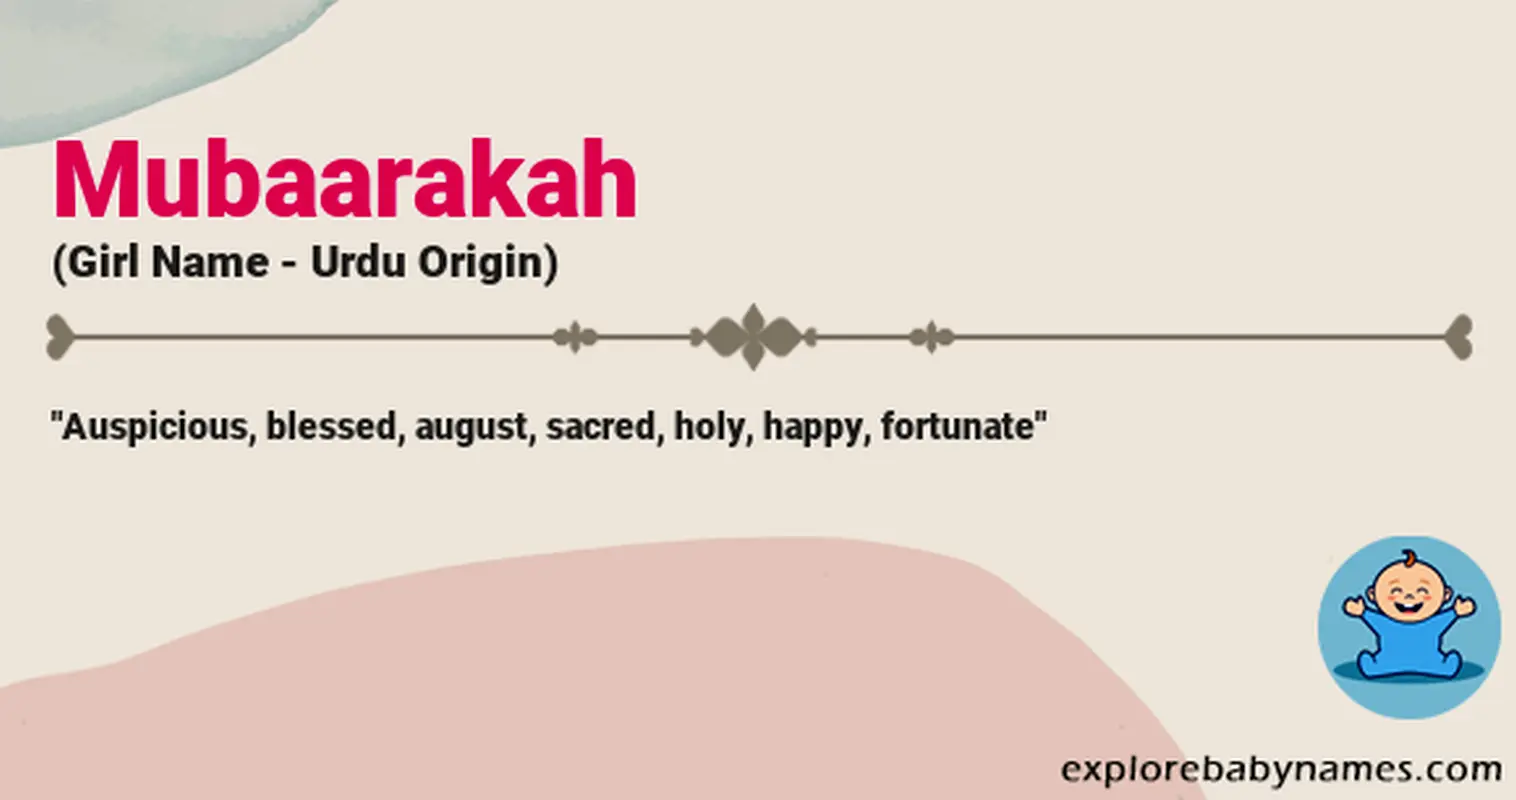 Meaning of Mubaarakah